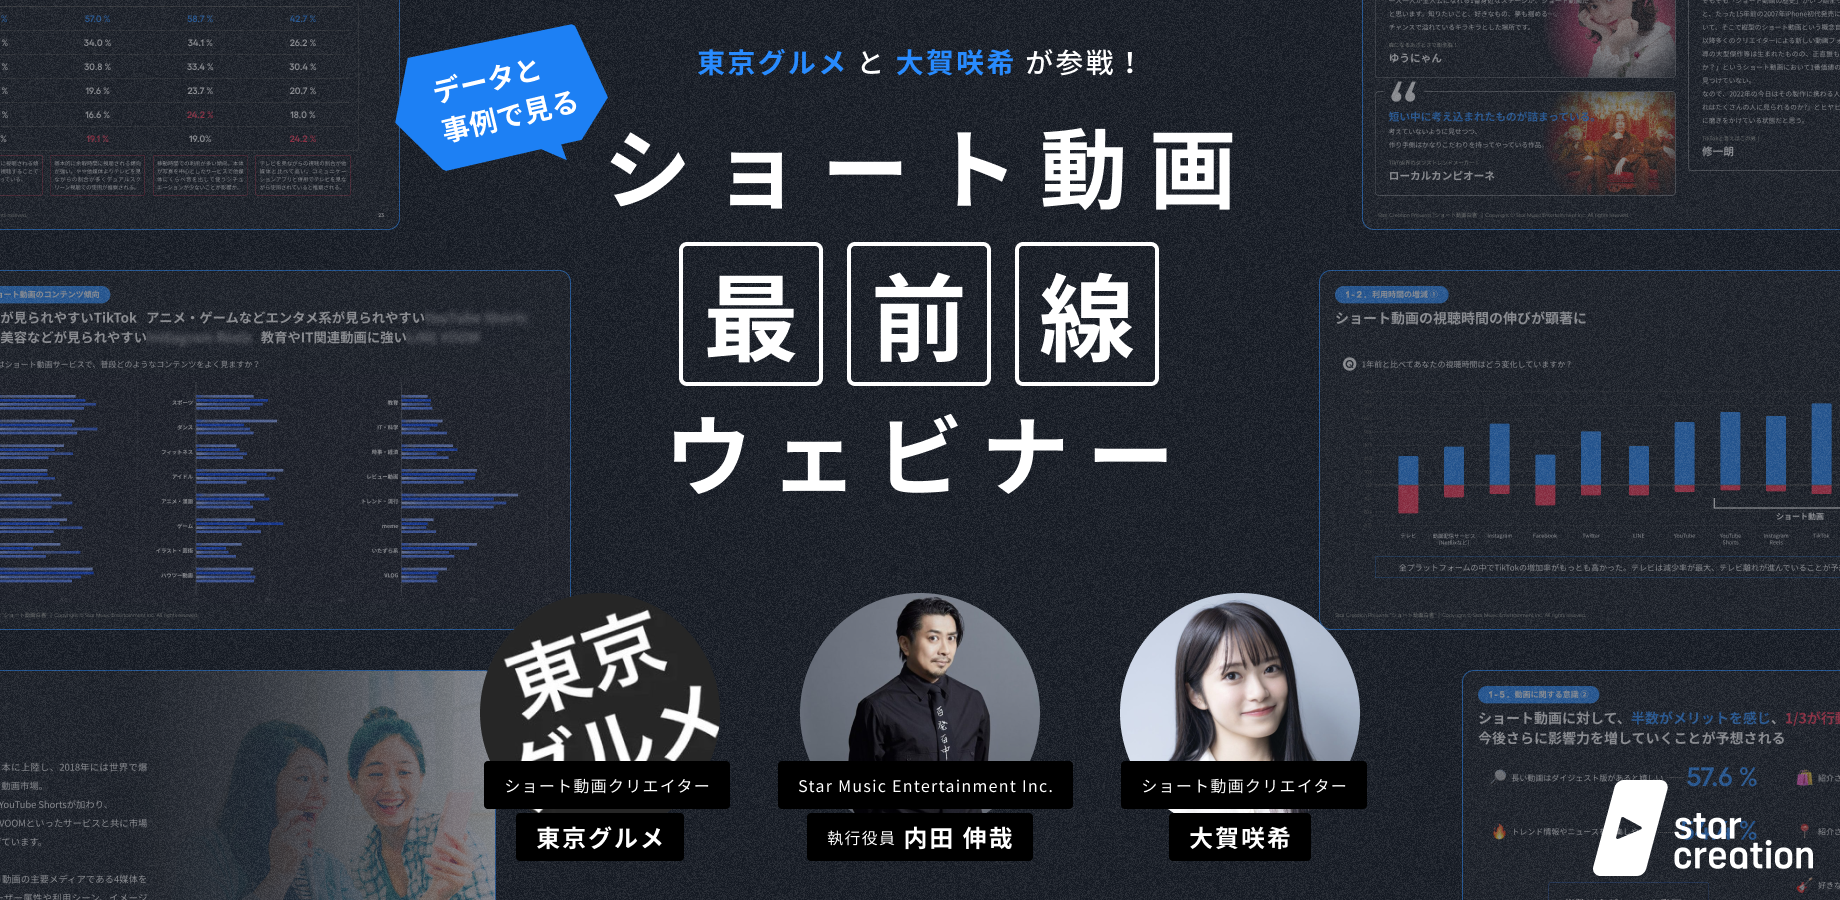 【セミナー開催 3/30】大人気TikTokクリエイターの東京グルメ、大賀咲希を招き、グルメと美容に関する事例についてのセミナーを開催